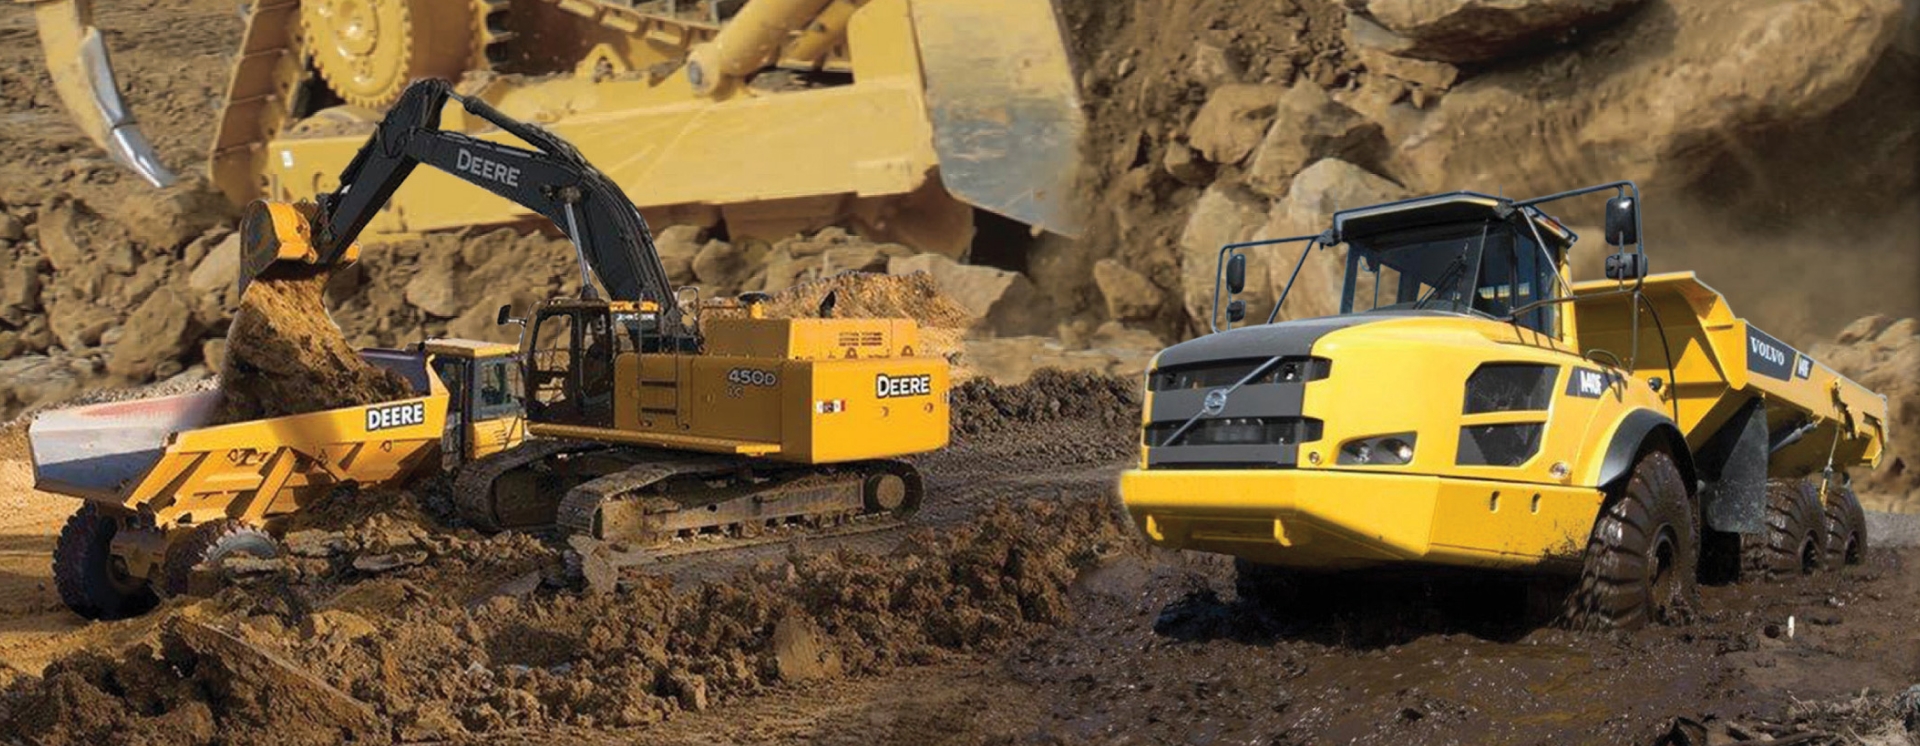 Equipment rental in Edmonton for excavators and dump trucks